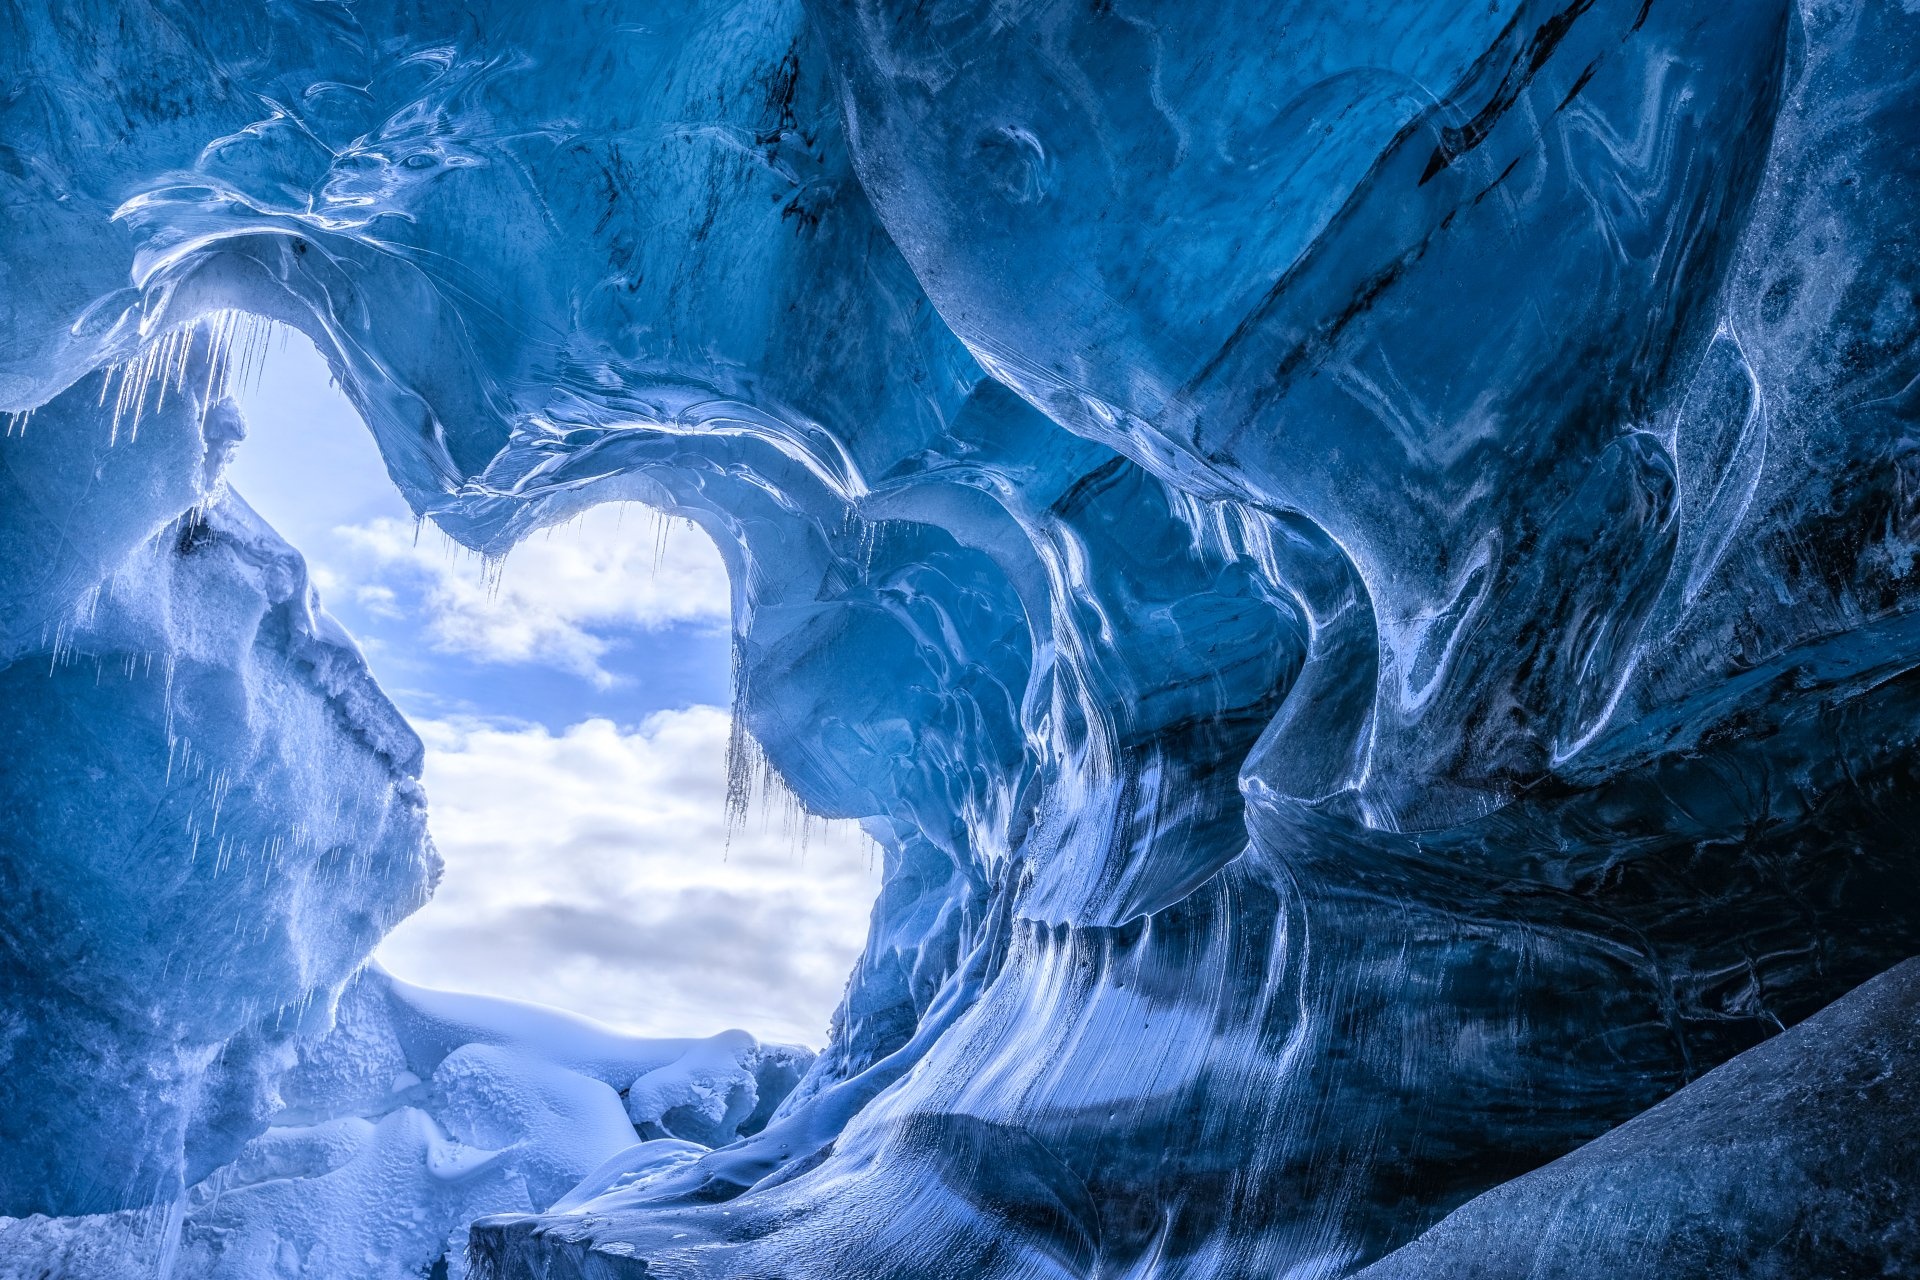 Ice Cave, Frozen wonders, Ice caves wallpapers, Nature's icy splendor, 1920x1280 HD Desktop